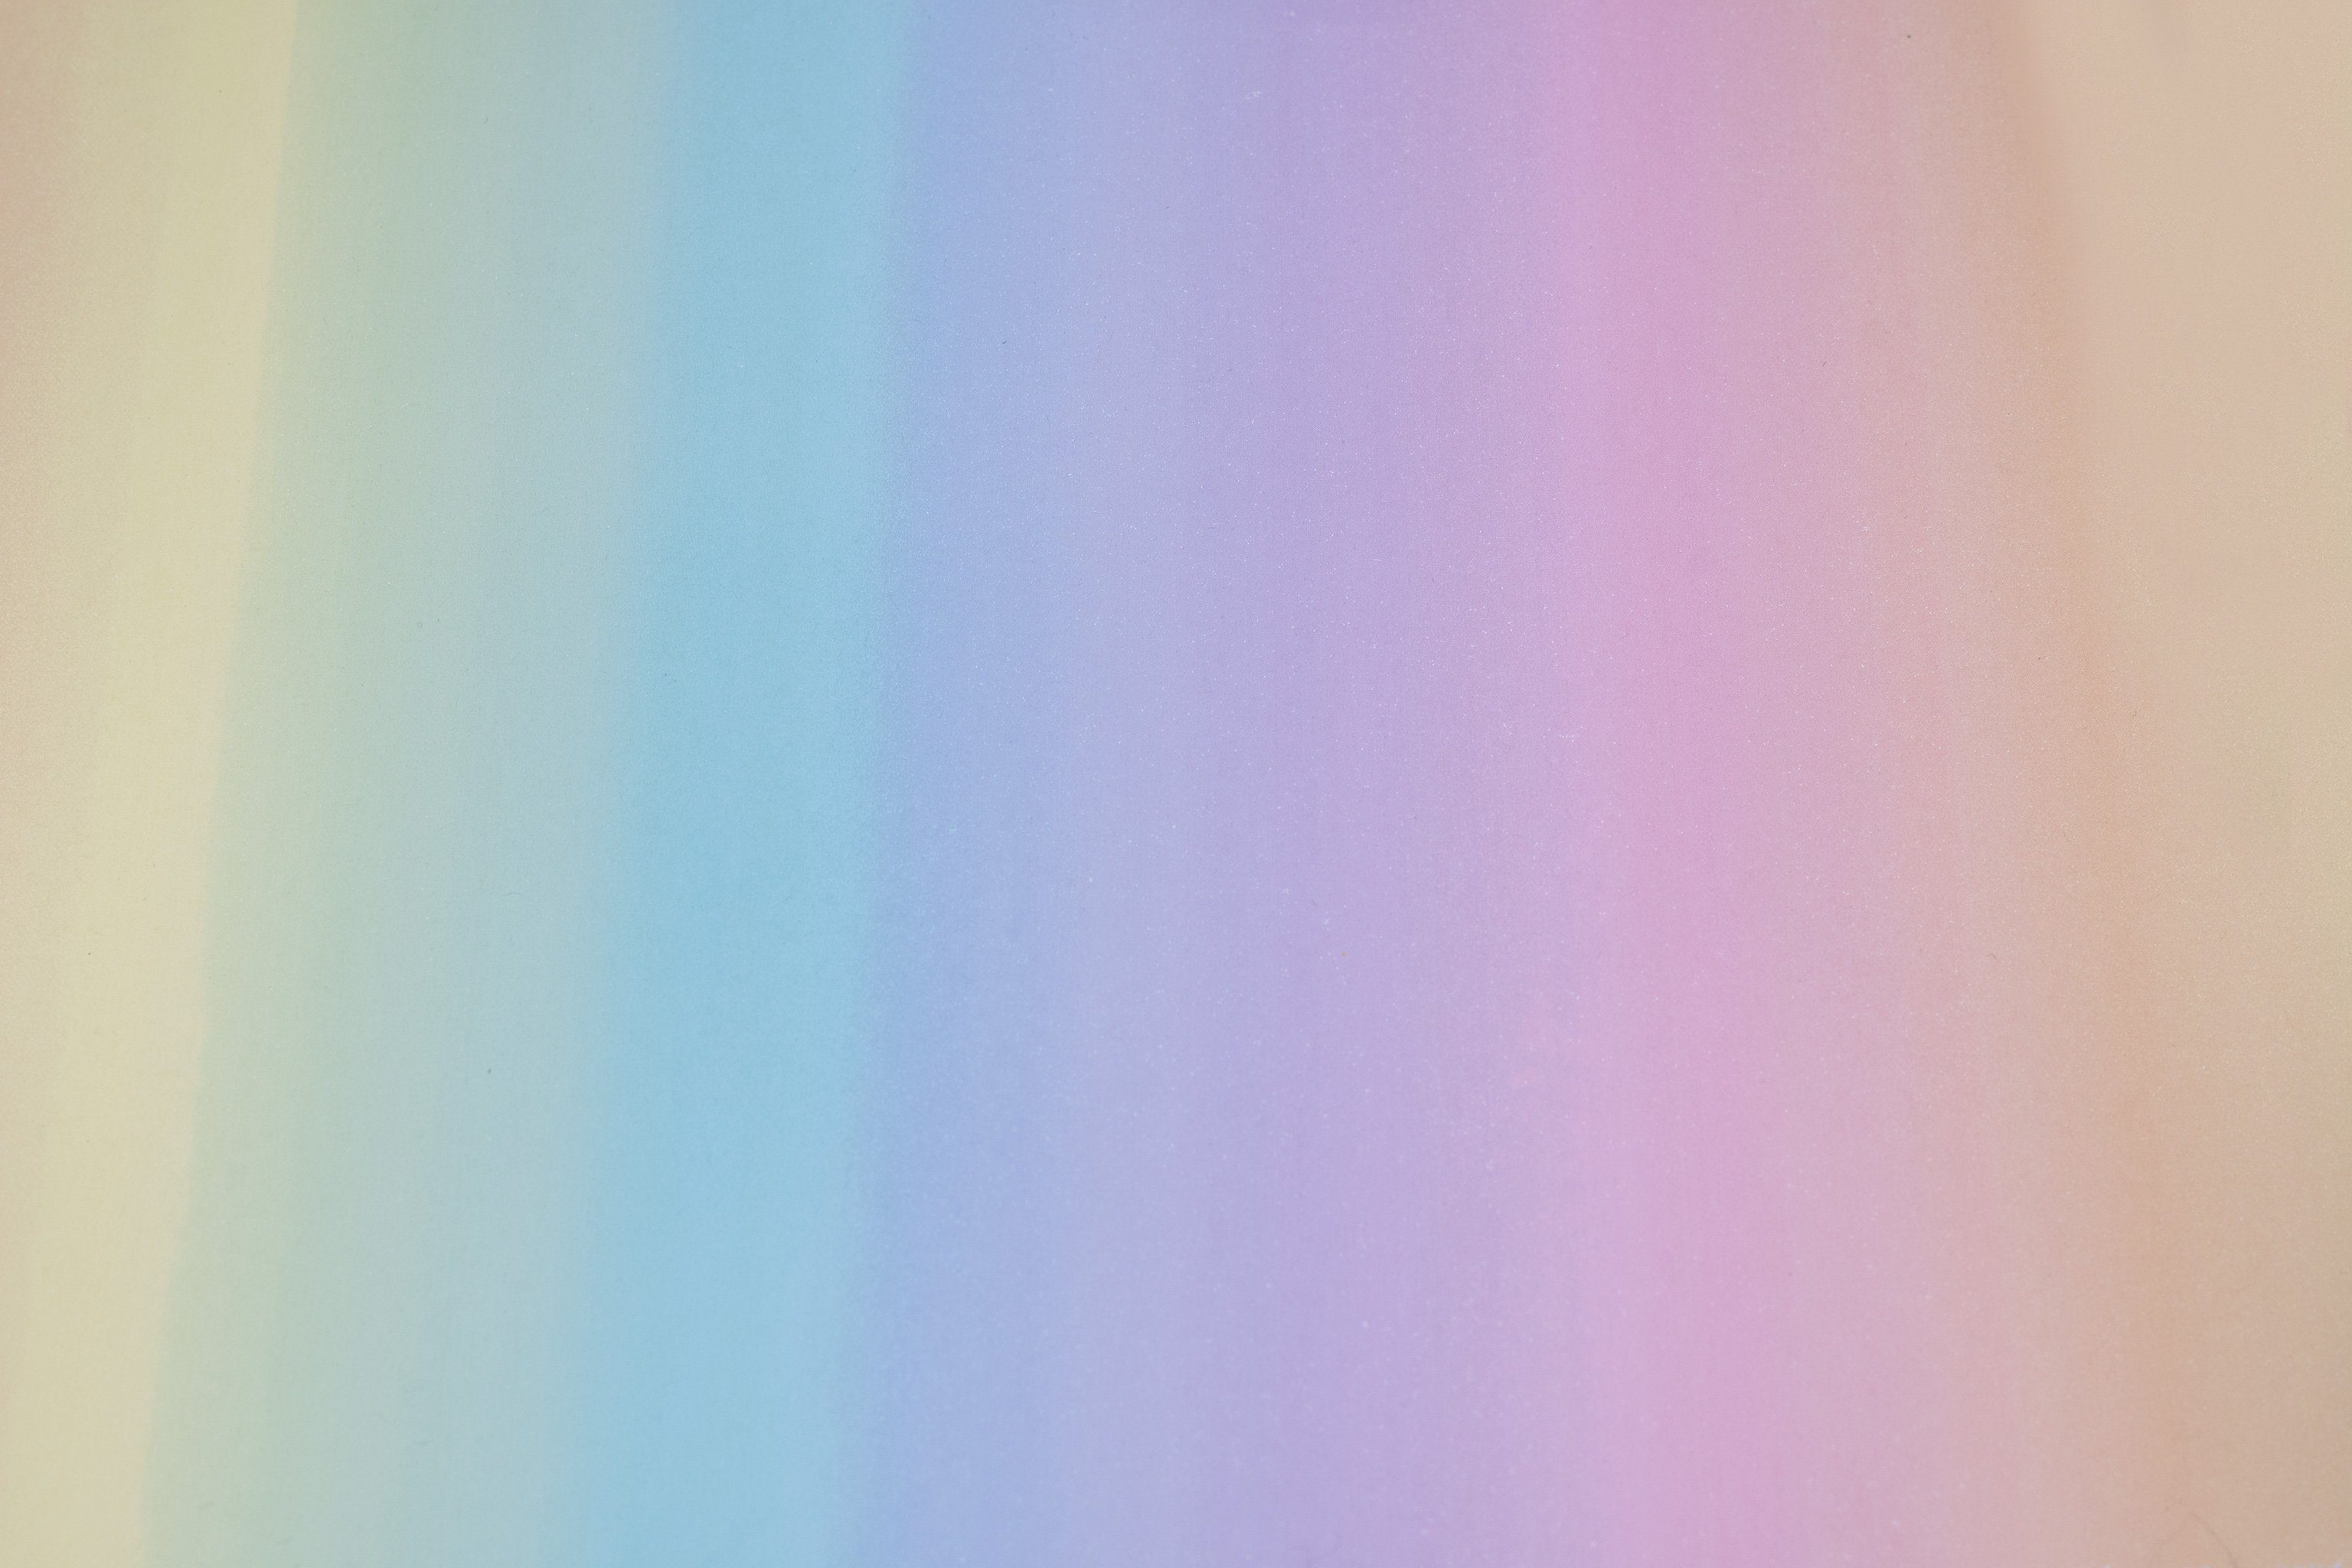 Star Geschenkpapier, Geschenkpapier Regenbogen Farbverlauf 70cm x 2m Rolle Bunt Pastell